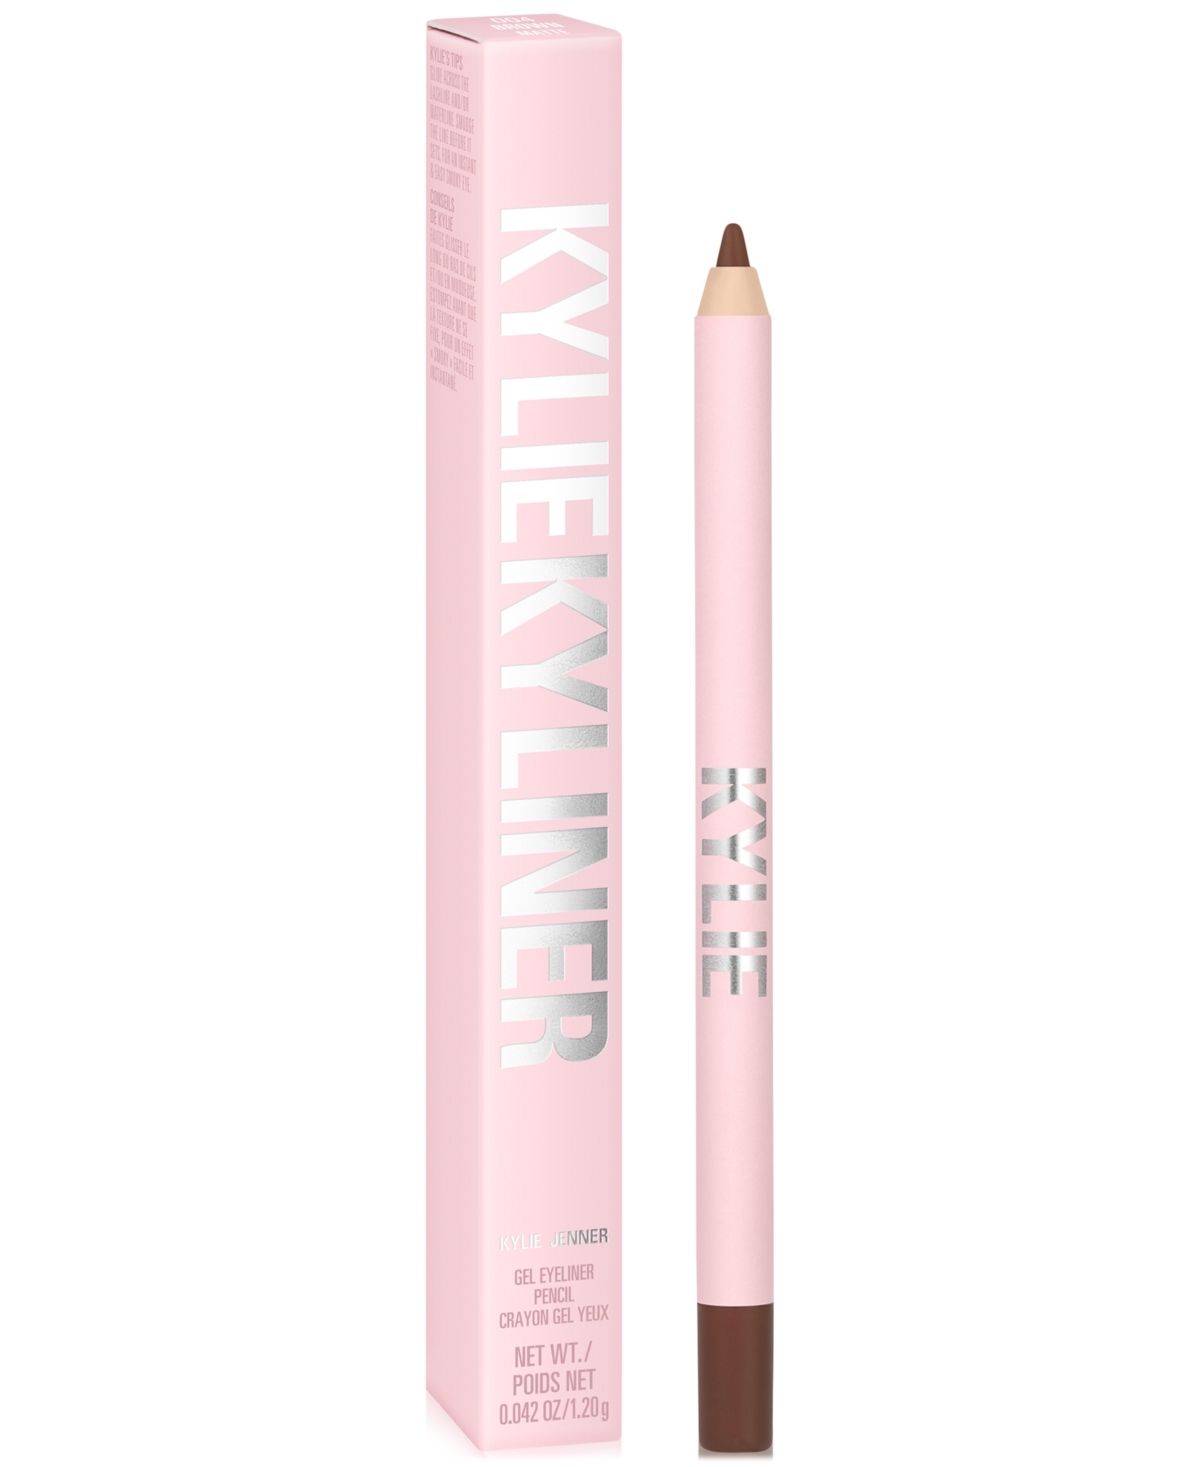 Kylie Cosmetics Kyliner Gel Eyeliner Pencil In Matte Brown